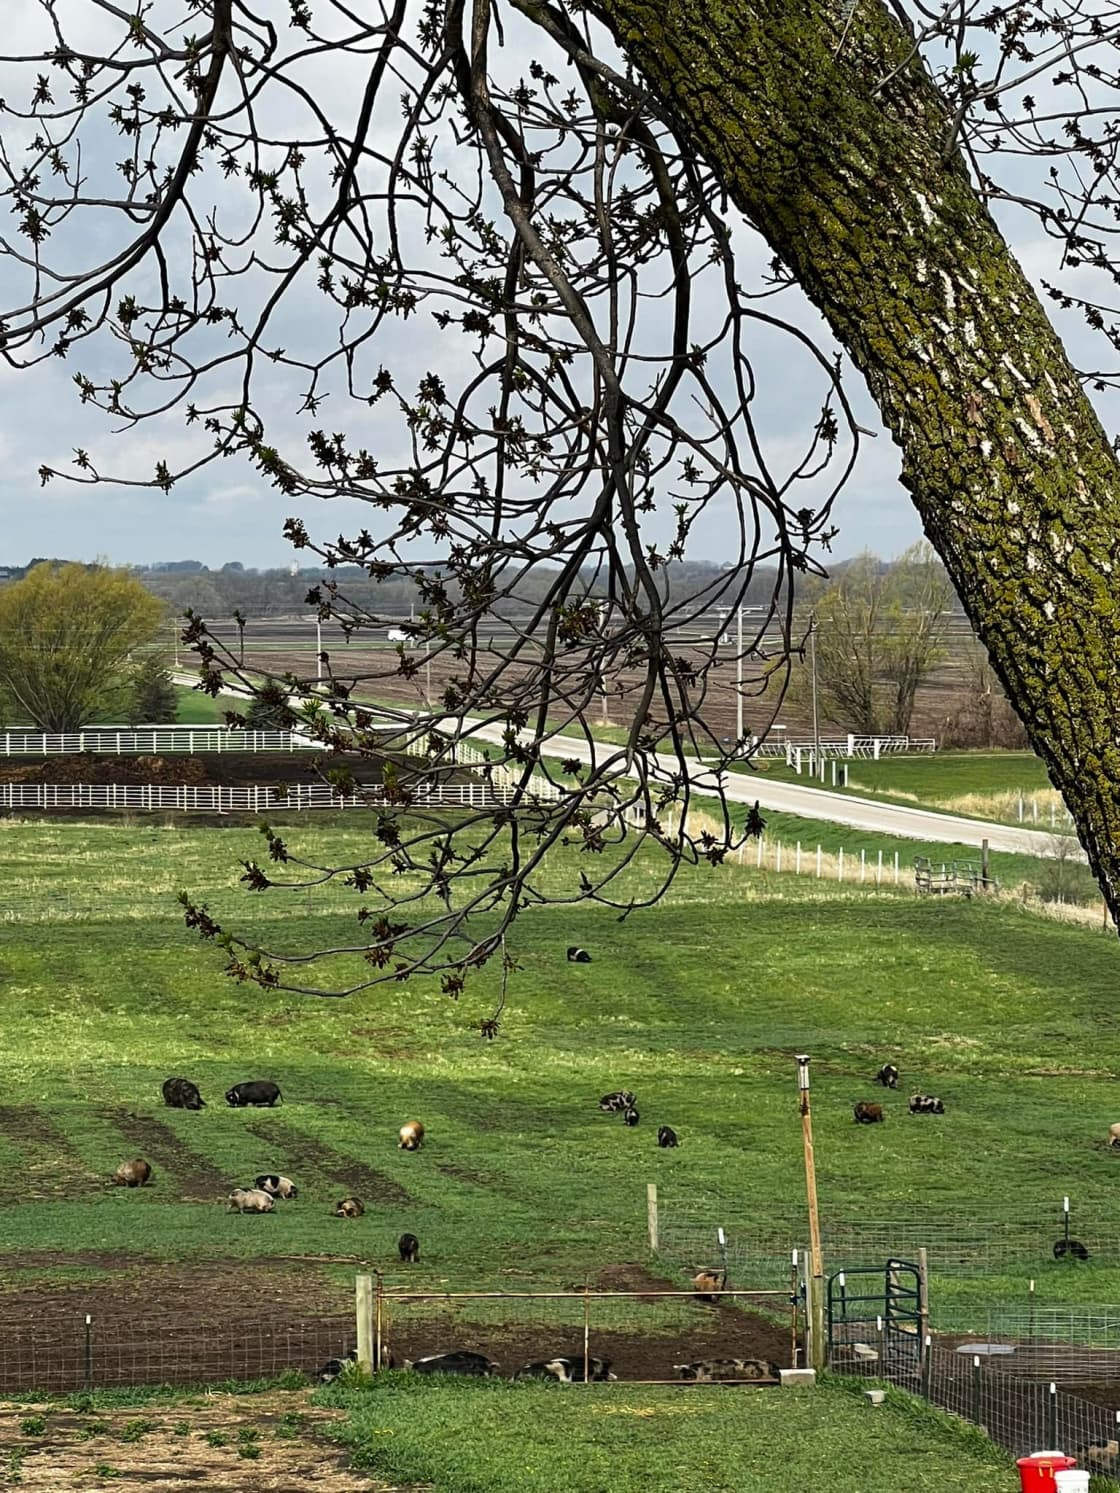 View of main pasture